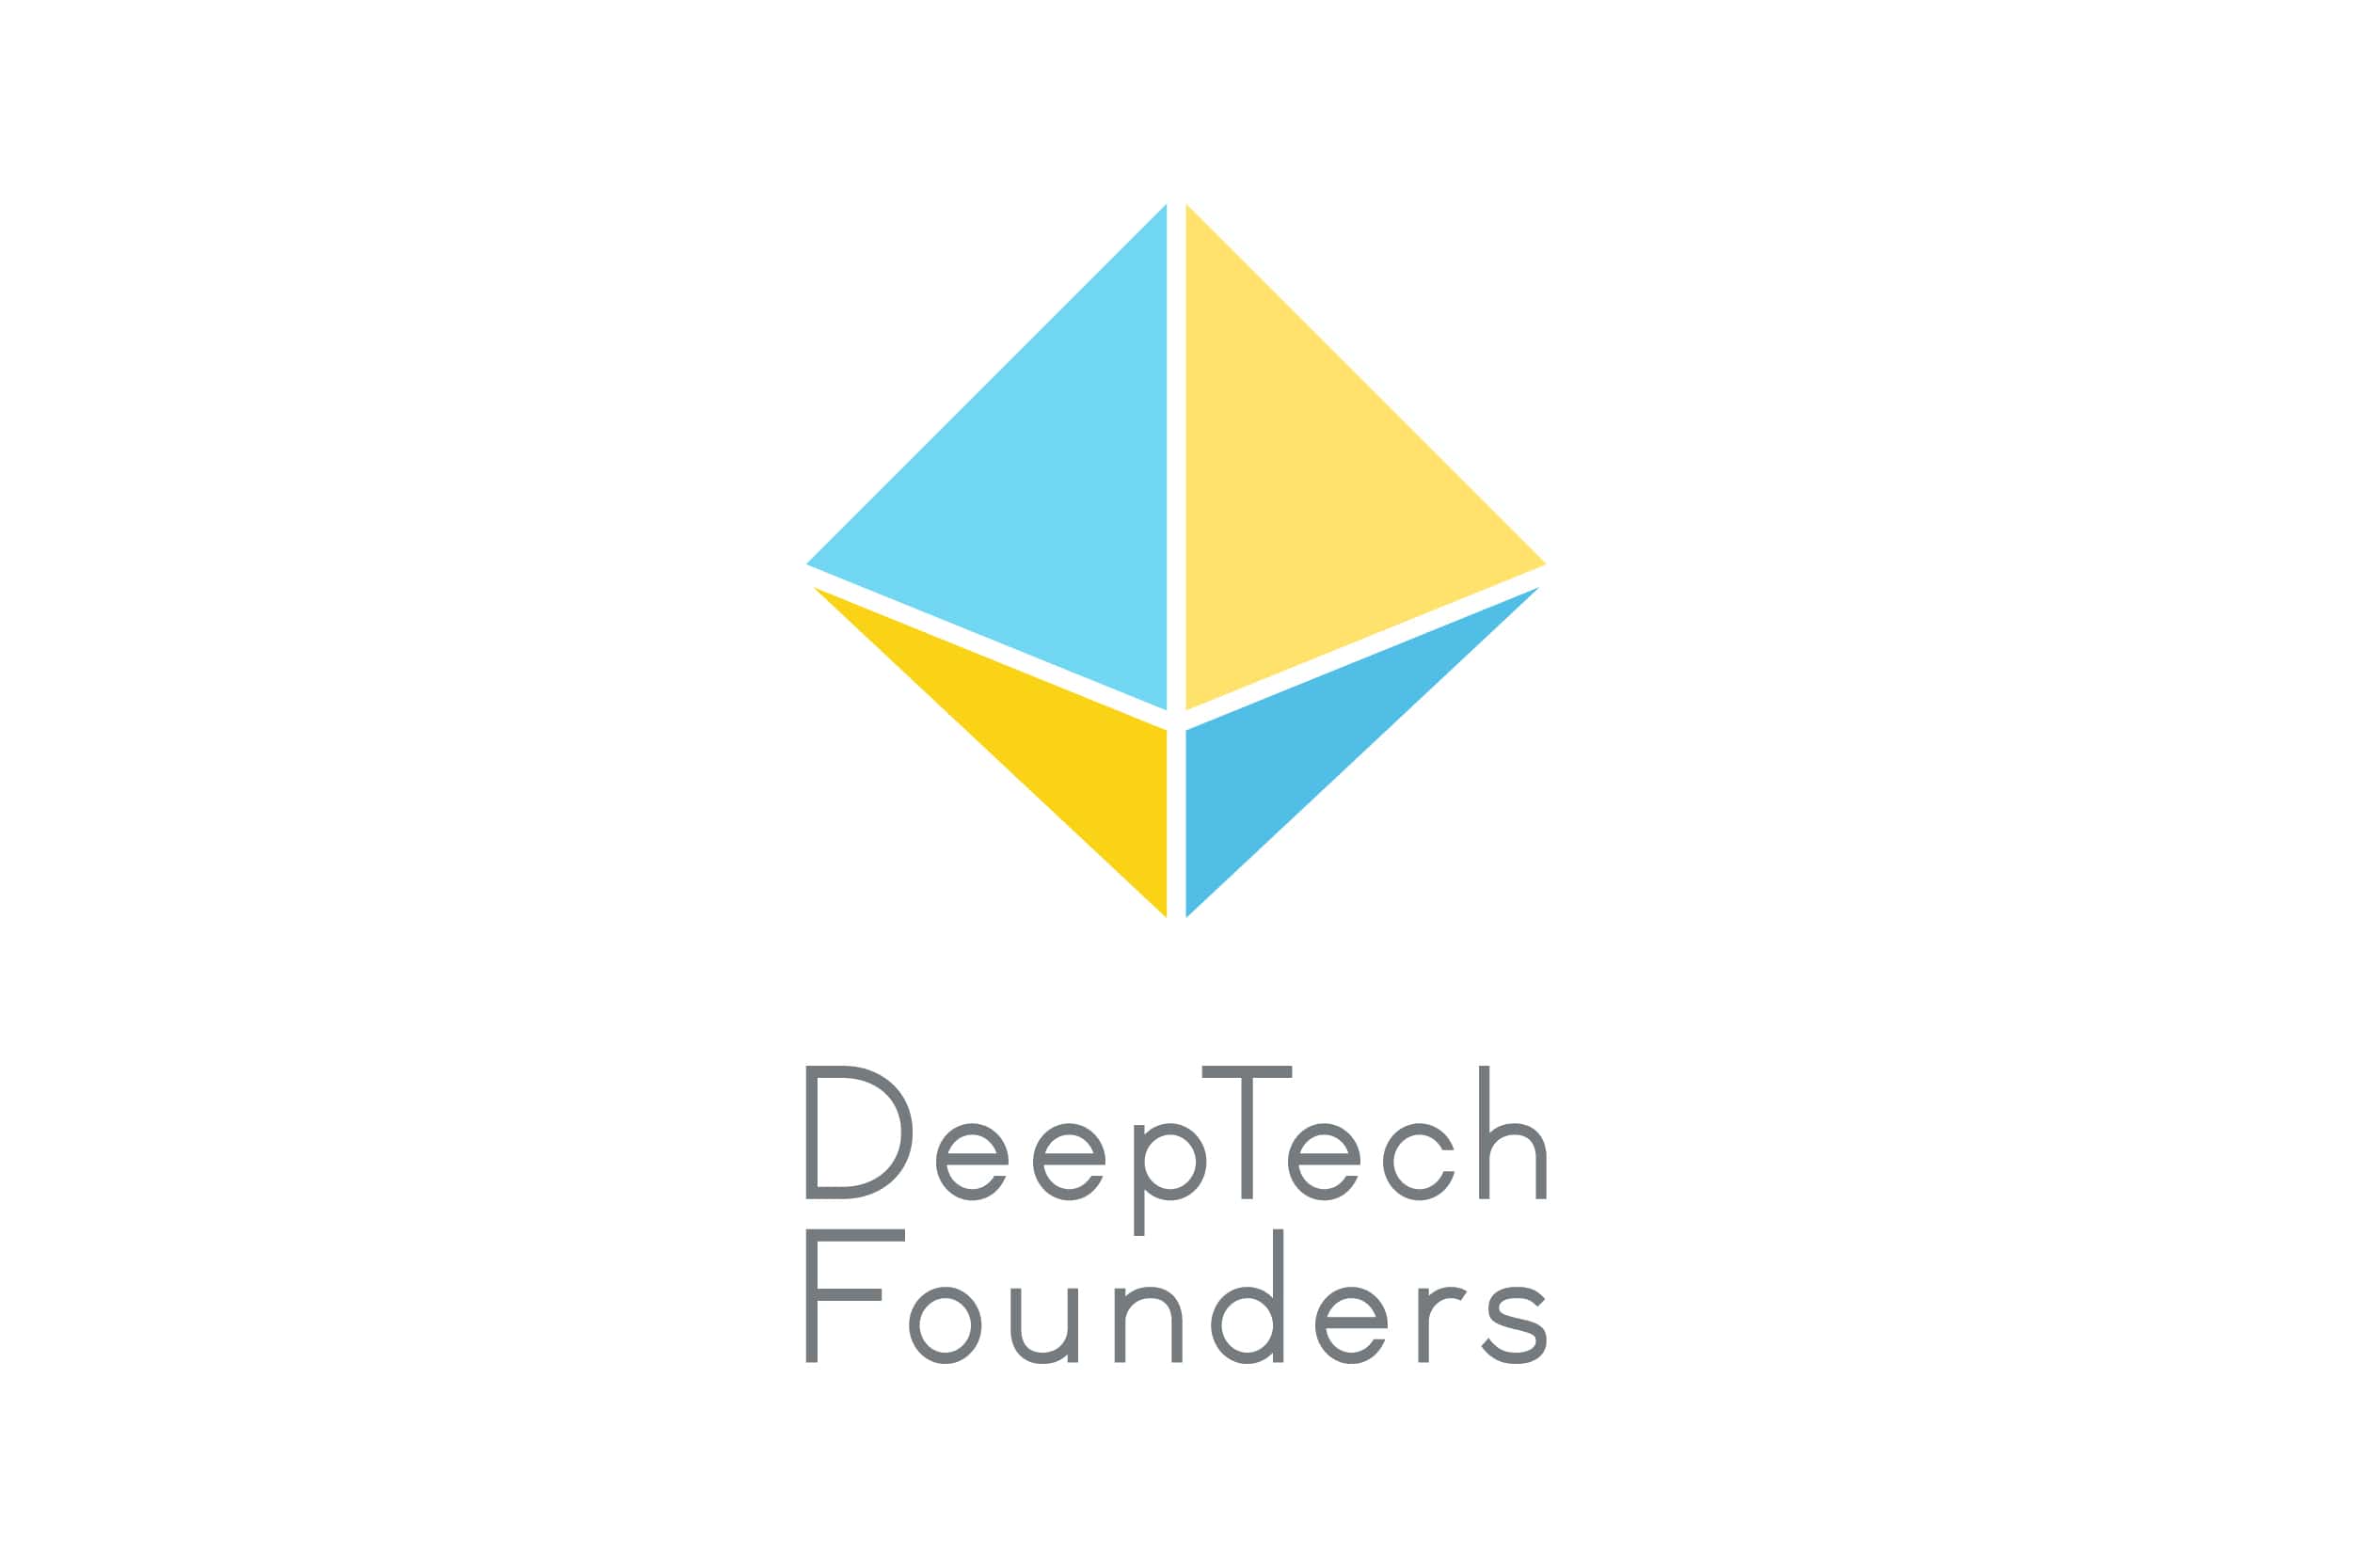 東大IPCの新サービス「Deep Tech Founders」